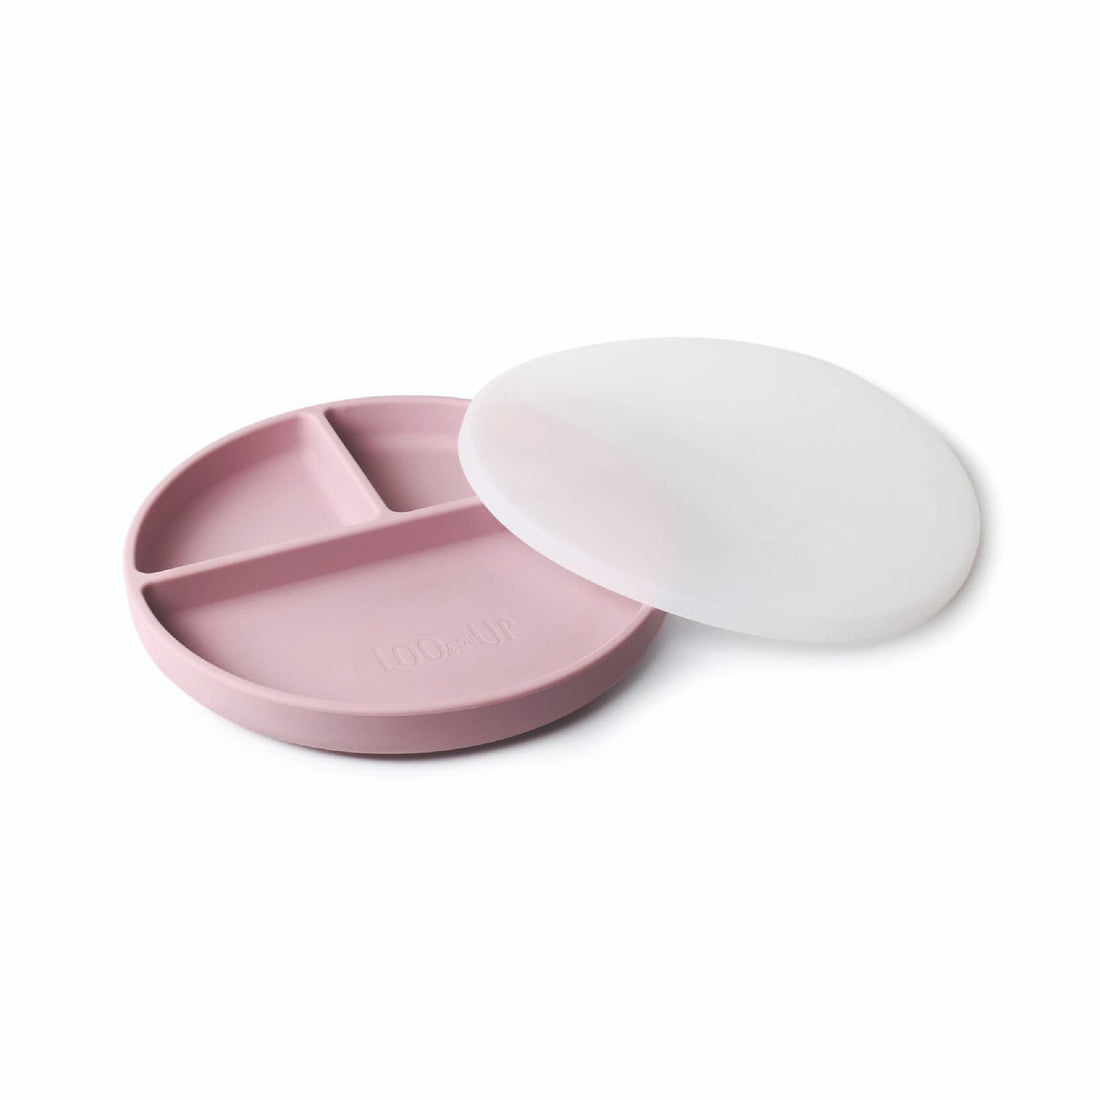 Assiette à compartiments en silicone rose